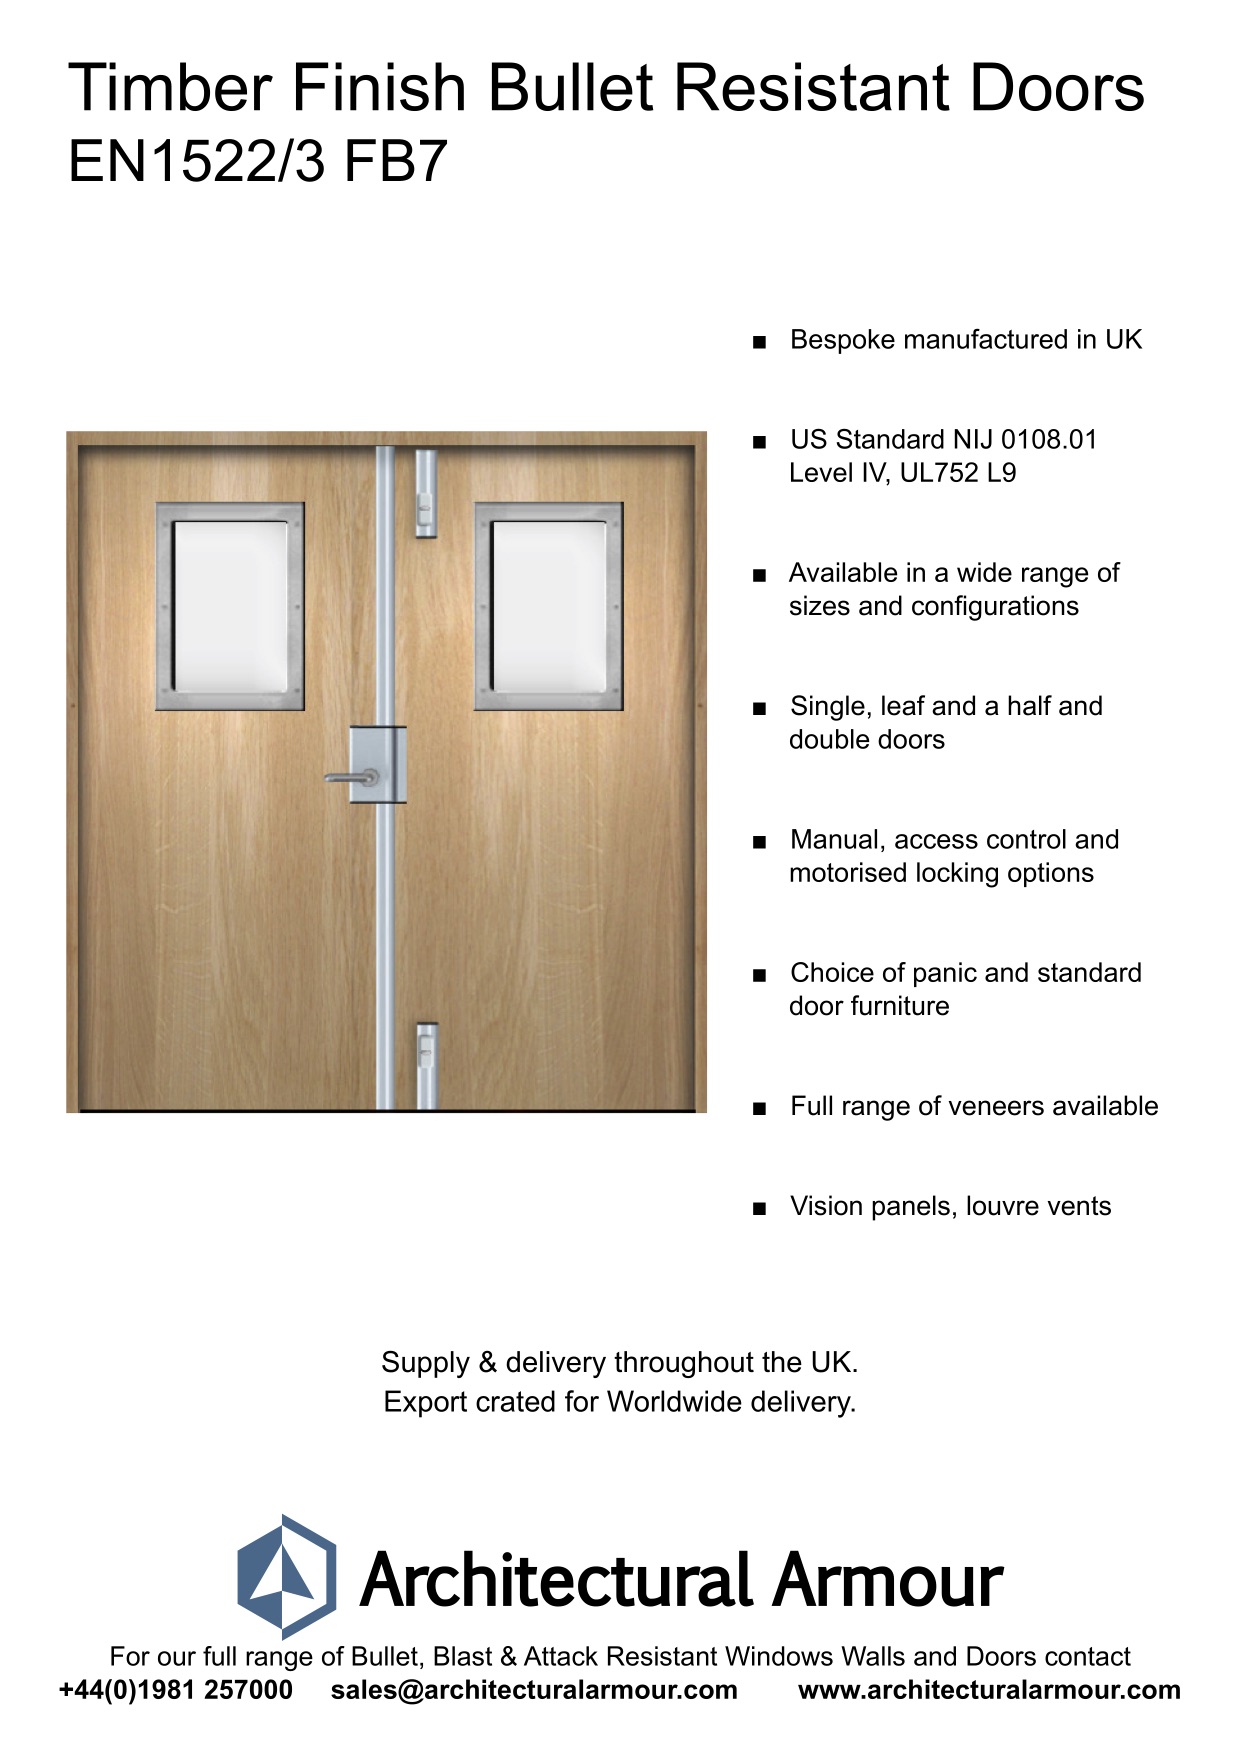 EN1522-3-FB7-Bulletproof-Doors-Vision-Panels